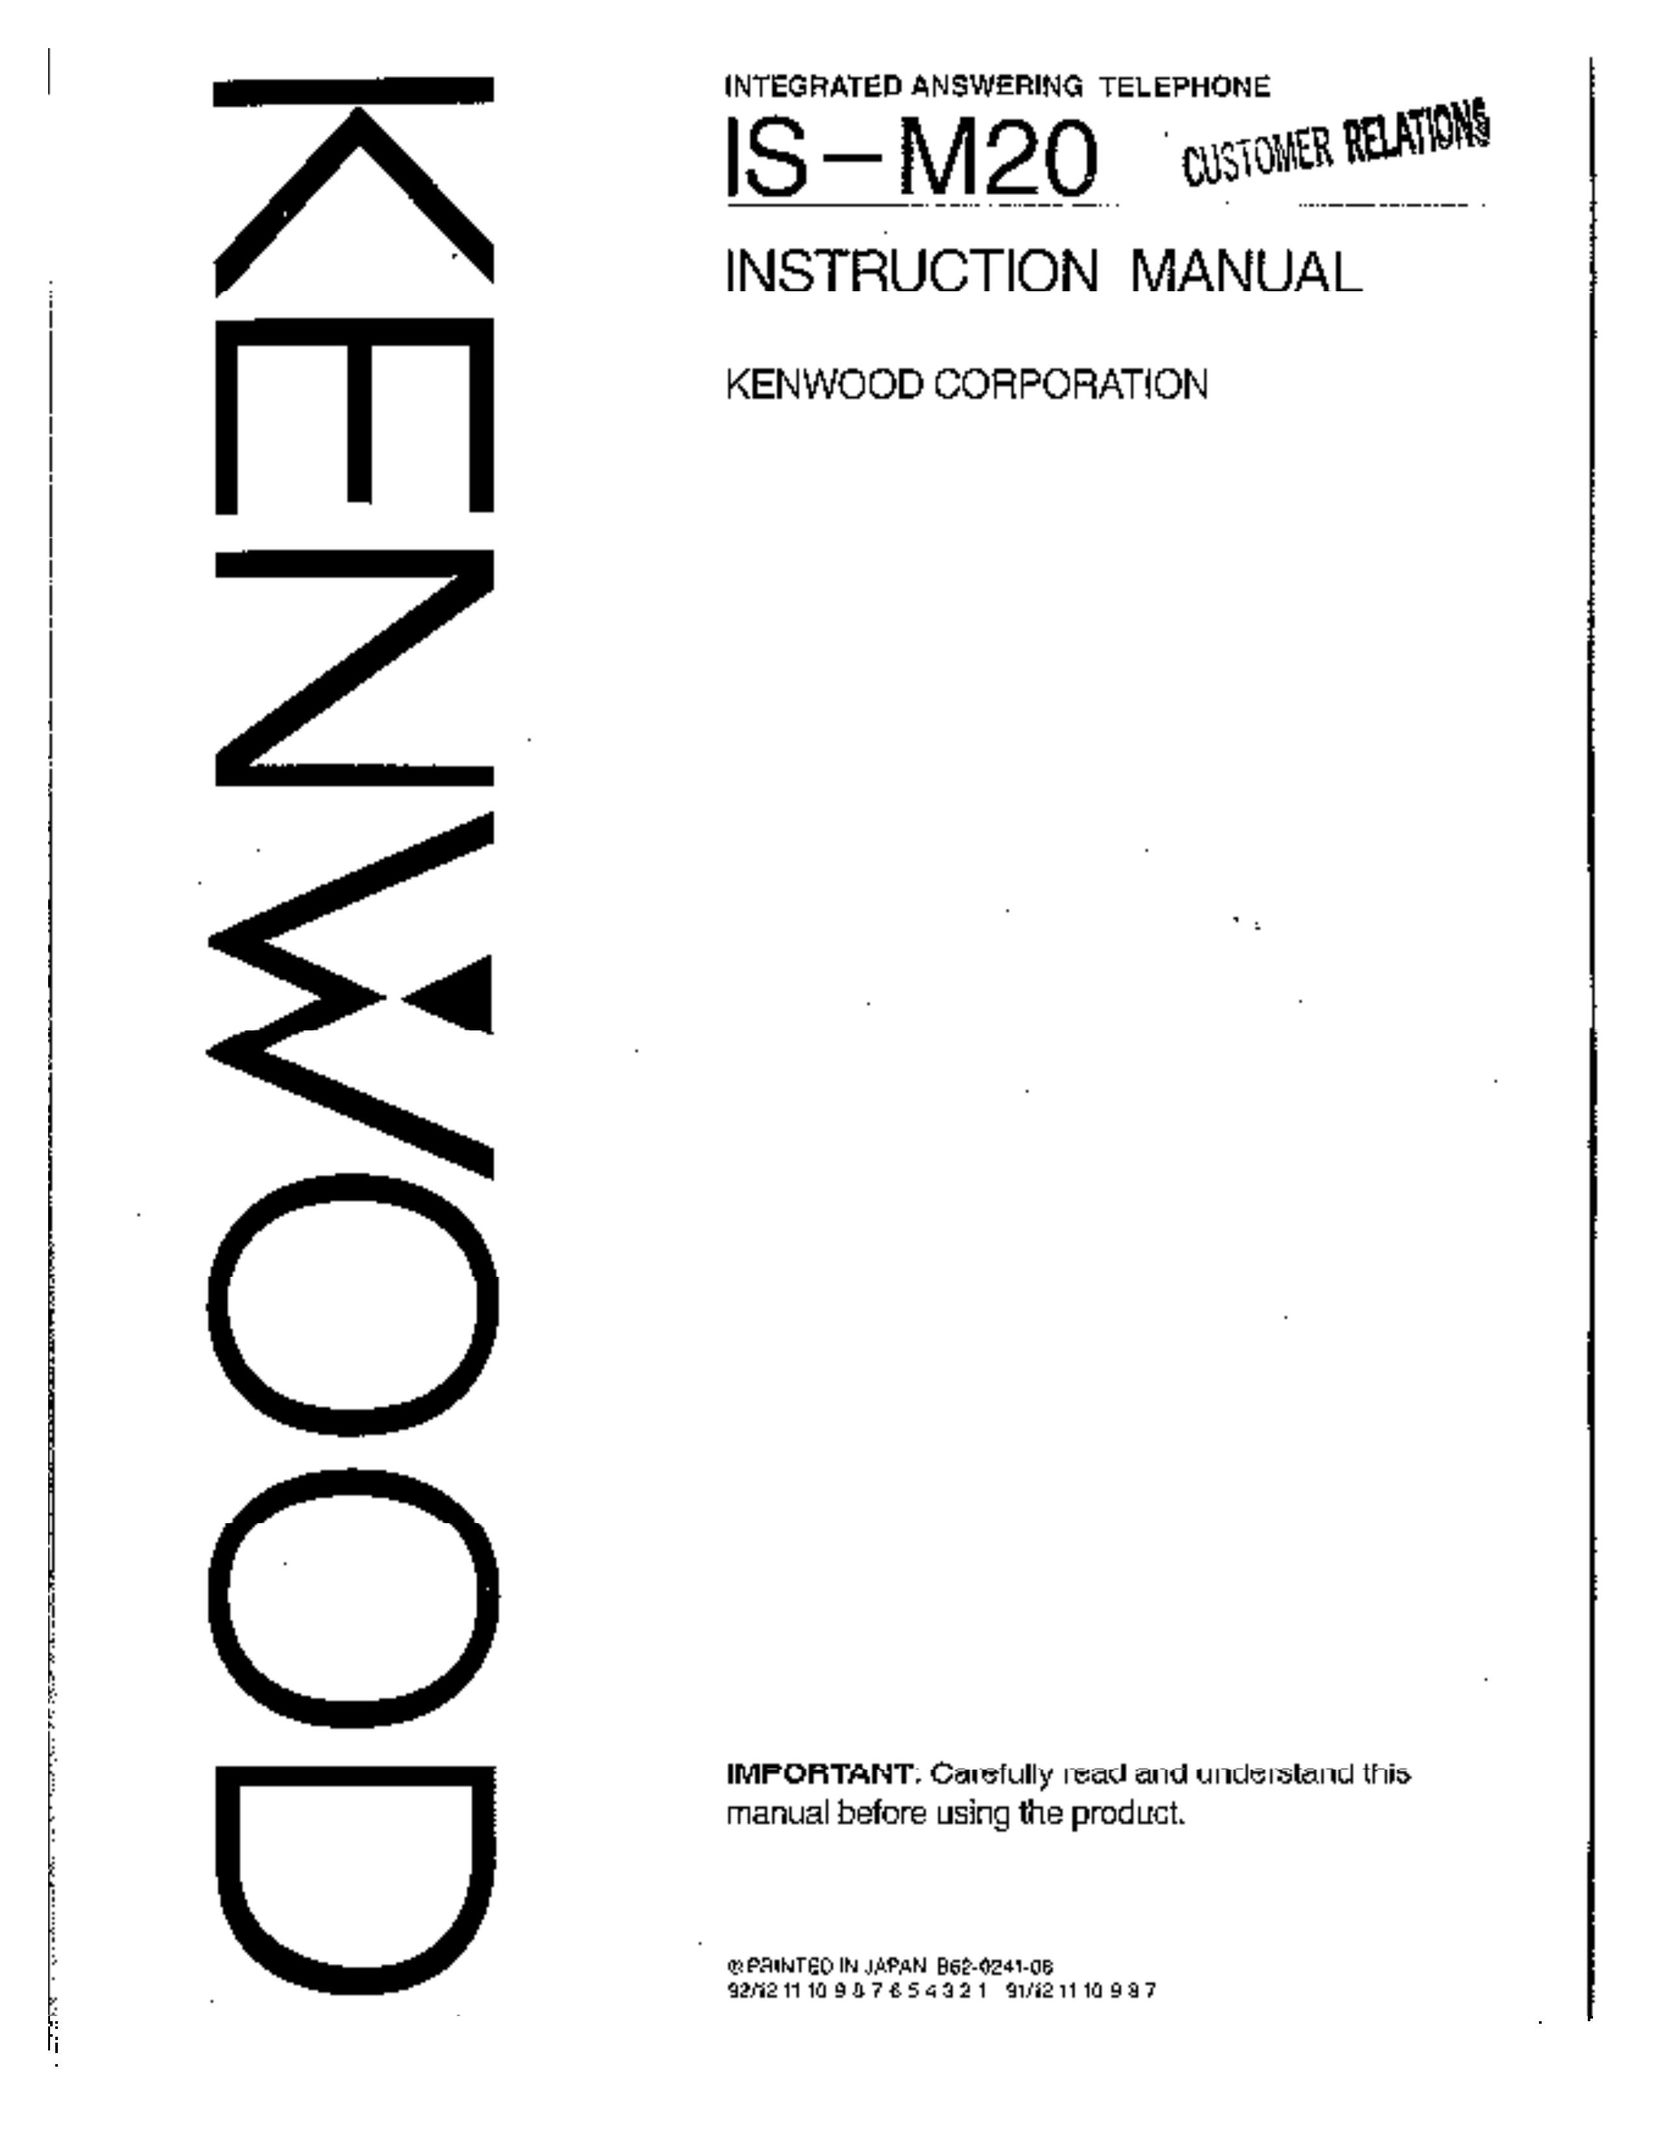 Kenwood IS-M20 Answering Machine User Manual